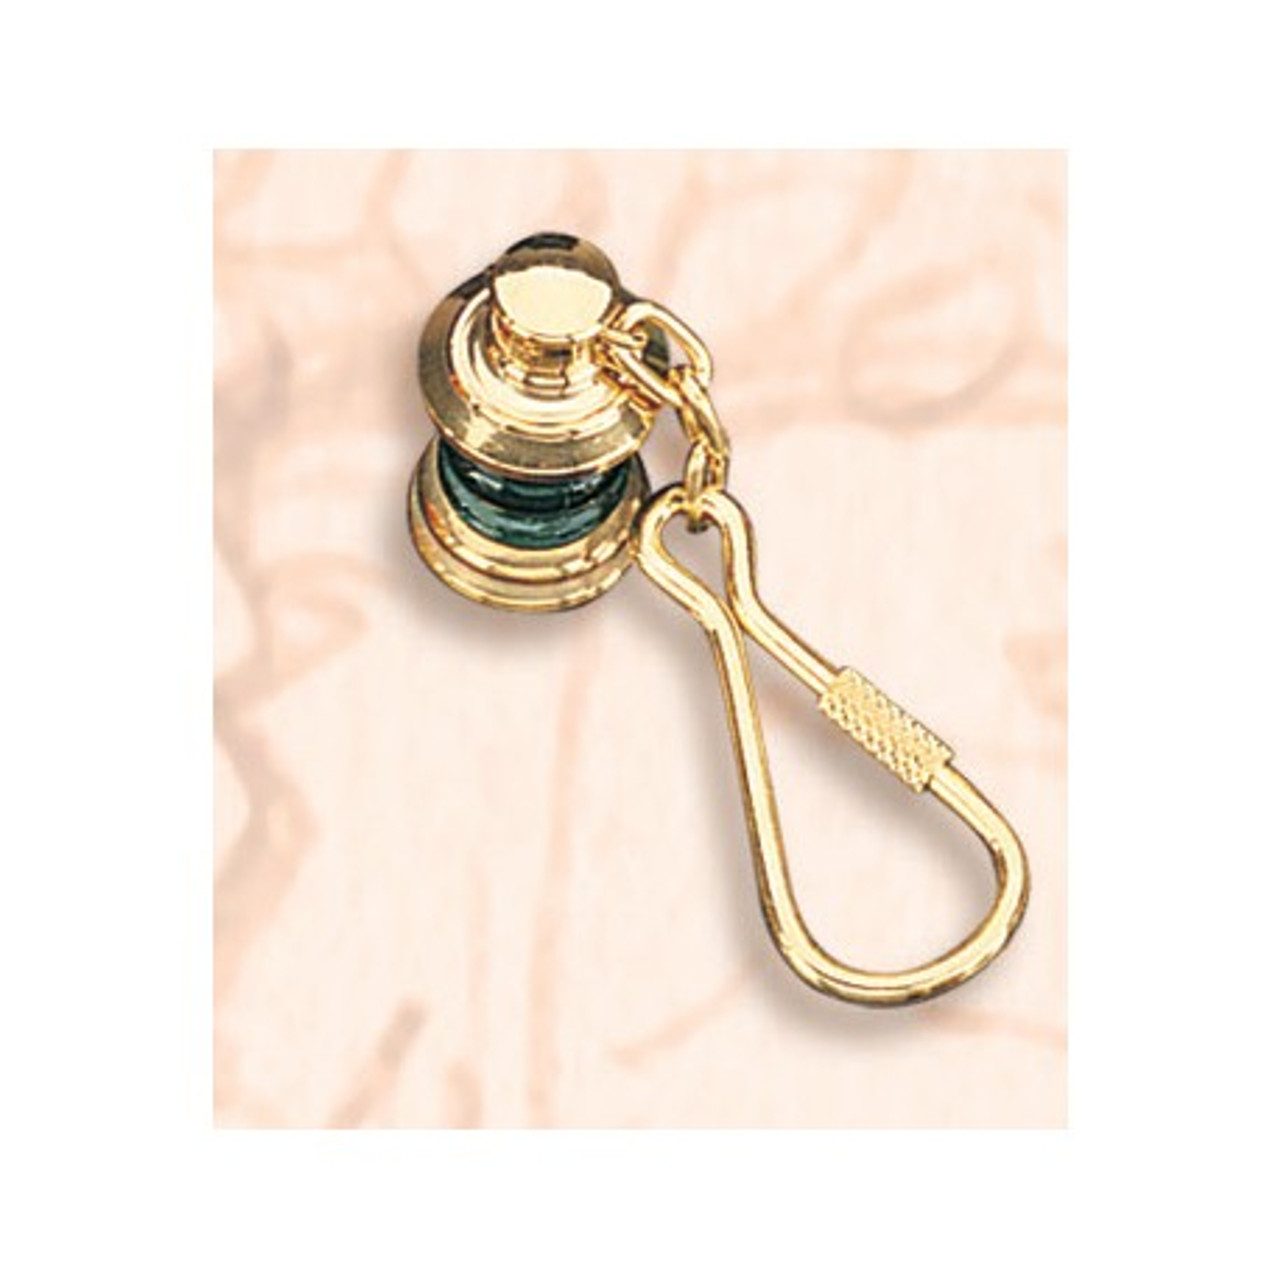 Brass Key Chain - Starboard Lantern